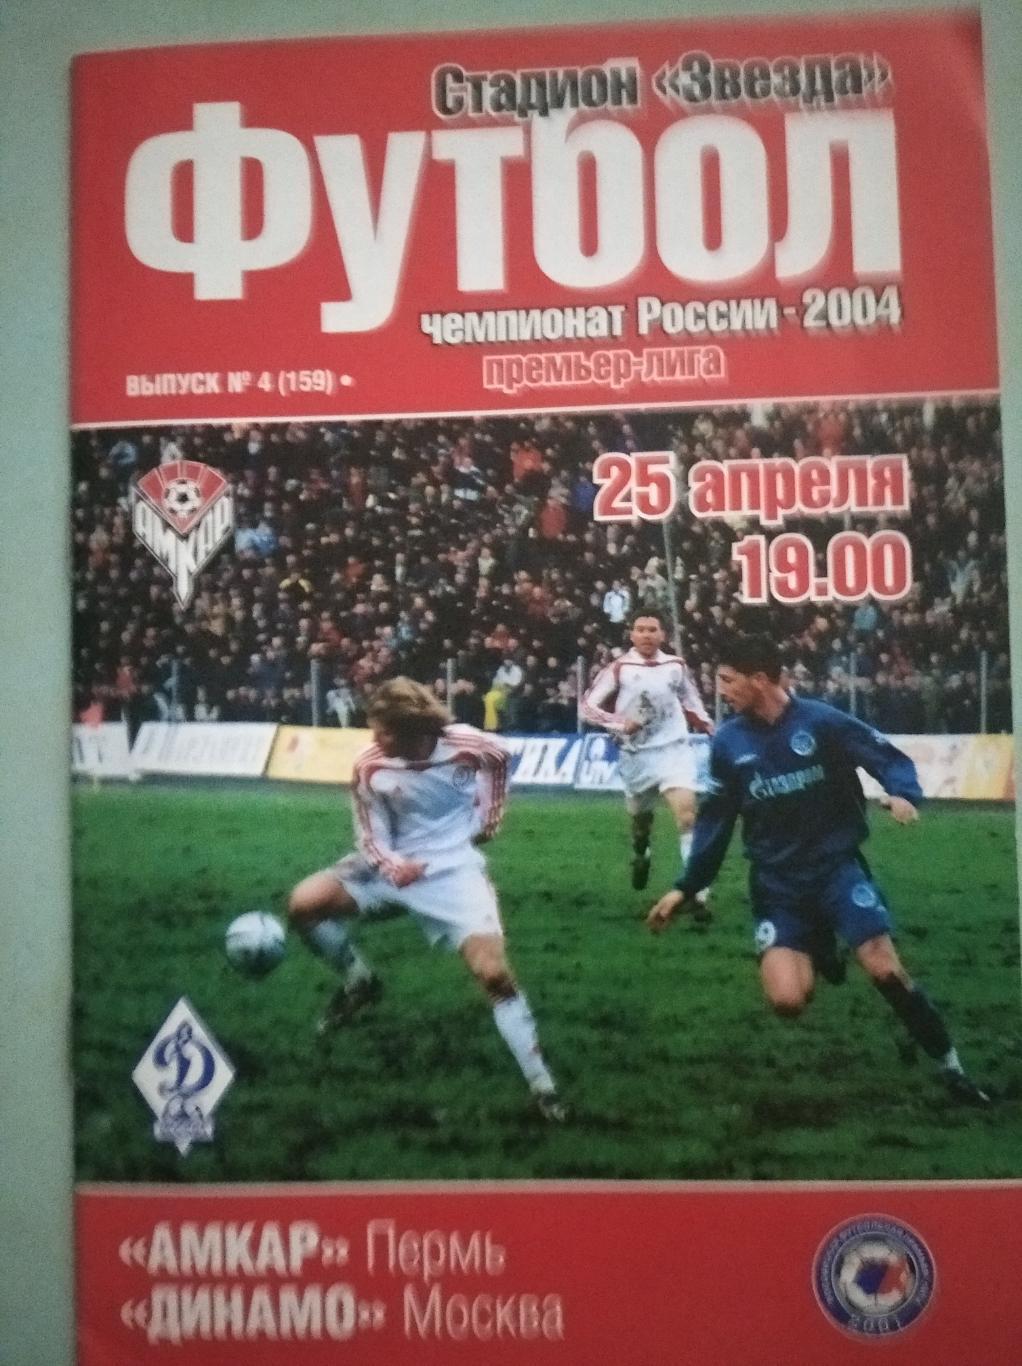 Амкар Пермь - Динамо Москва. 25.04.2004